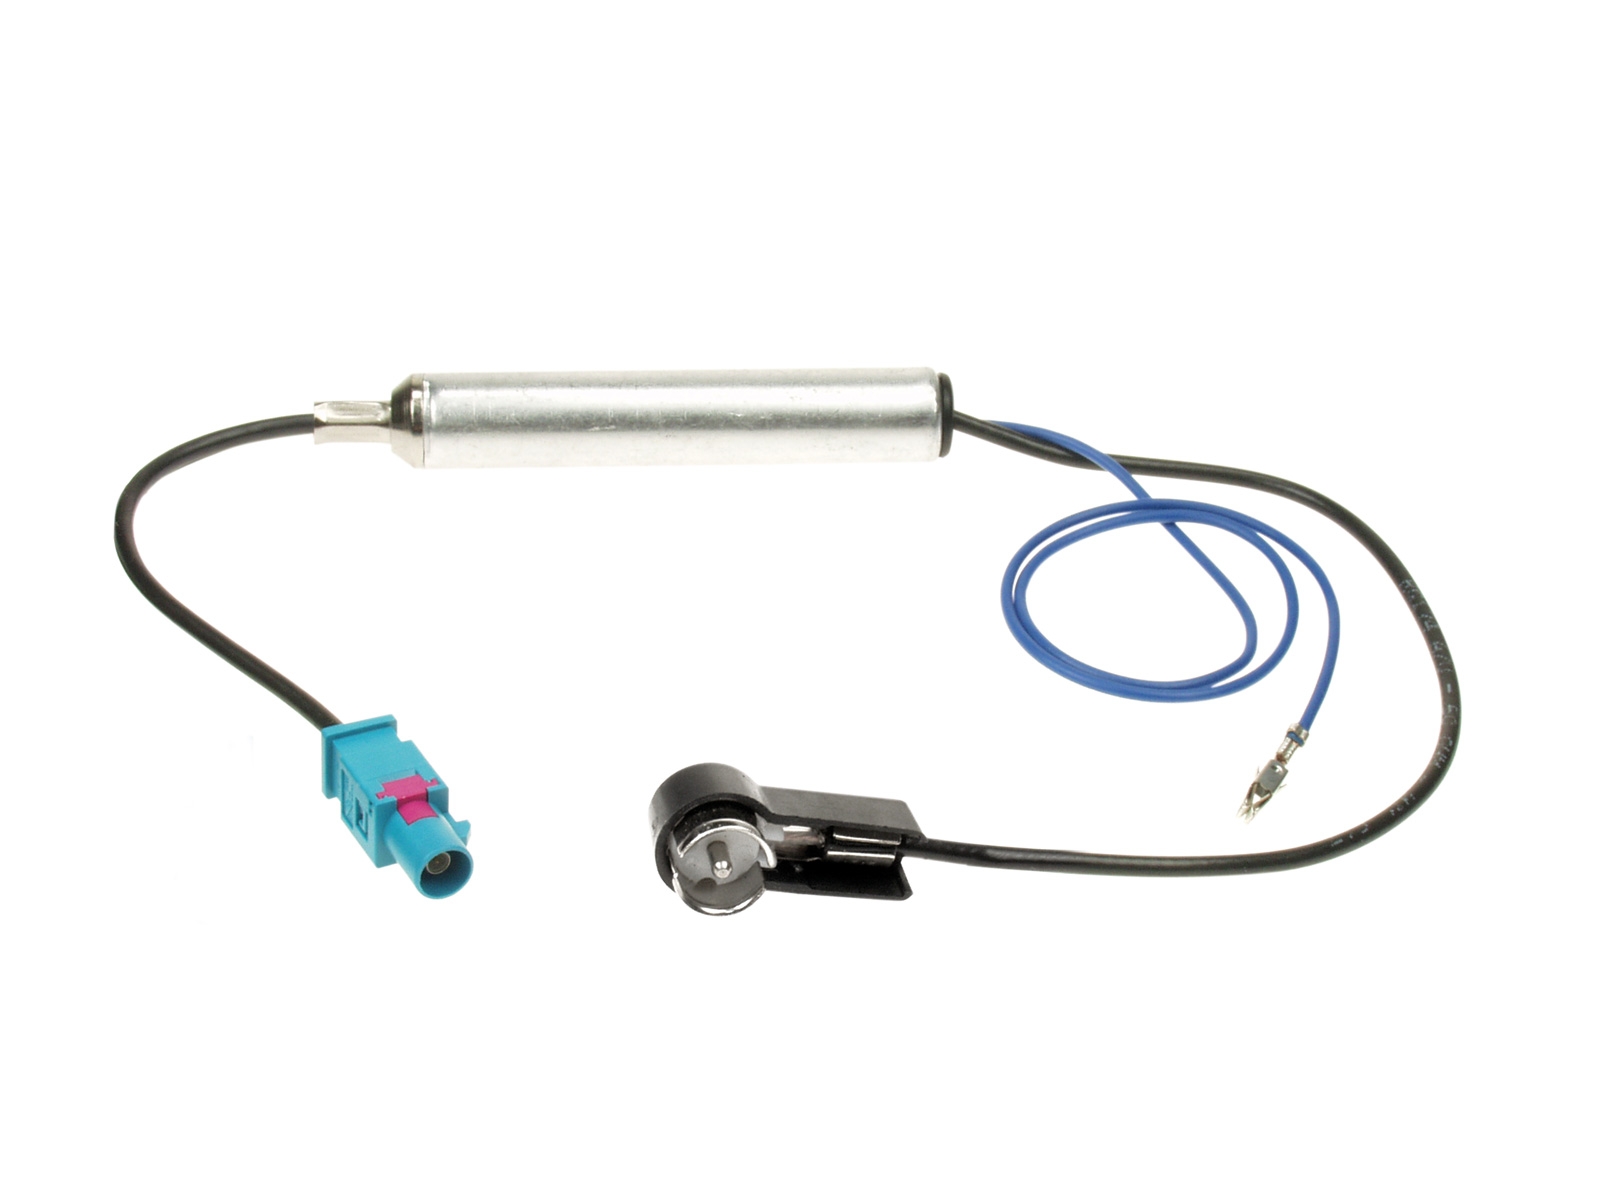 ACV Antennenadapter kompatibel mit Opel Phantomspeisung adaptiert von Fakra (m) auf ISO (m)